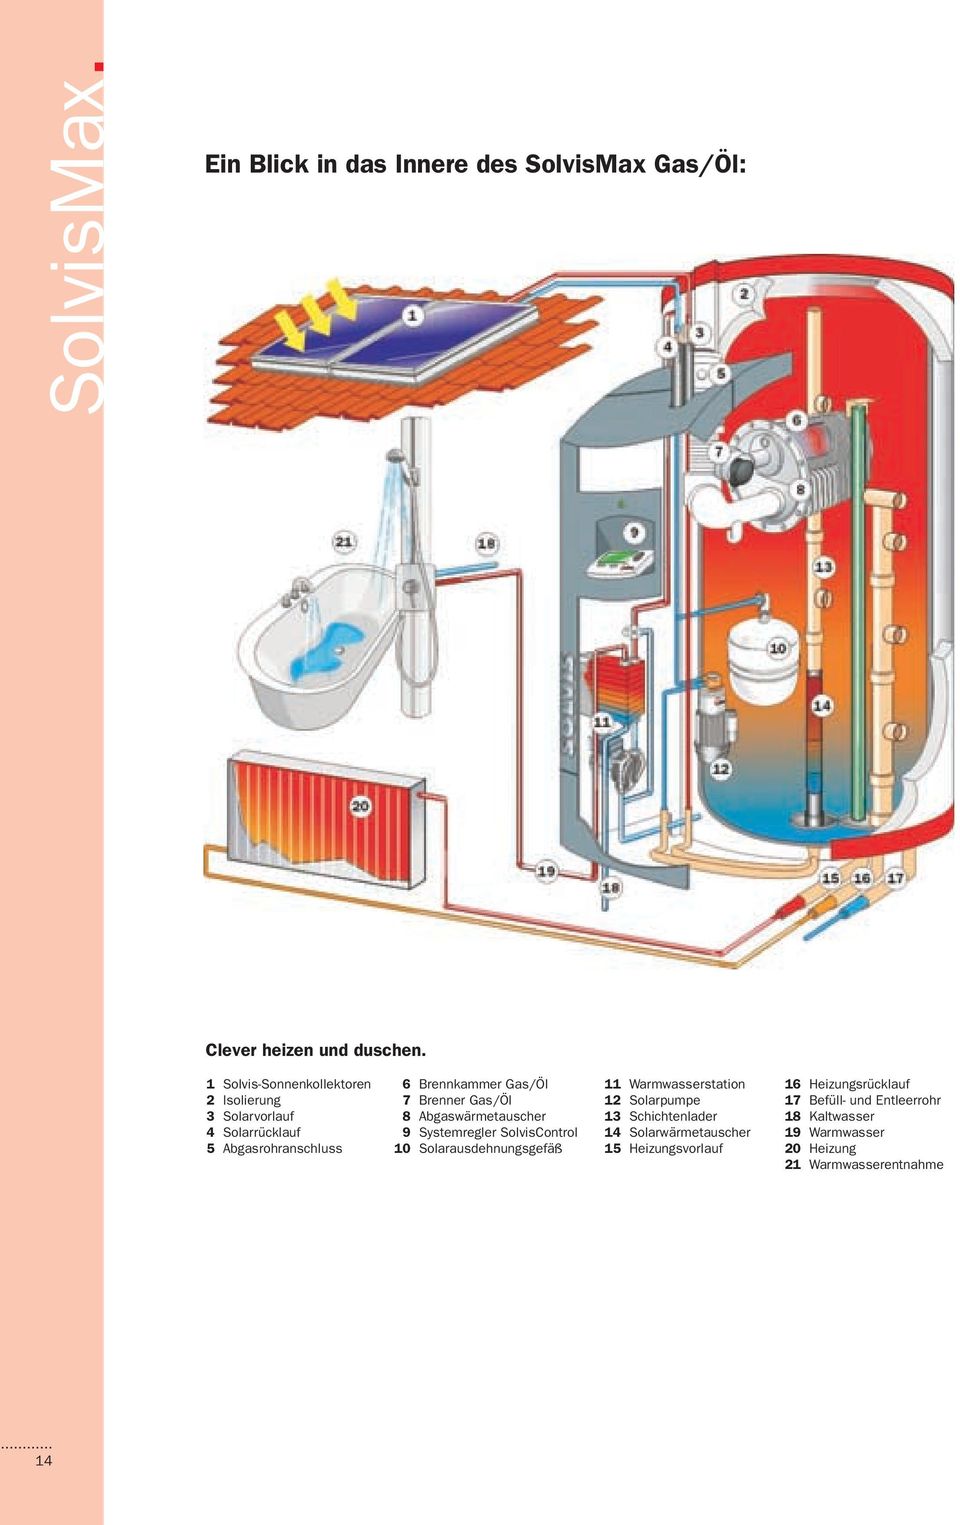 Brenner Gas/Öl Abgaswärmetauscher Systemregler SolvisControl Solarausdehnungsgefäß 11 12 13 14 15 Warmwasserstation